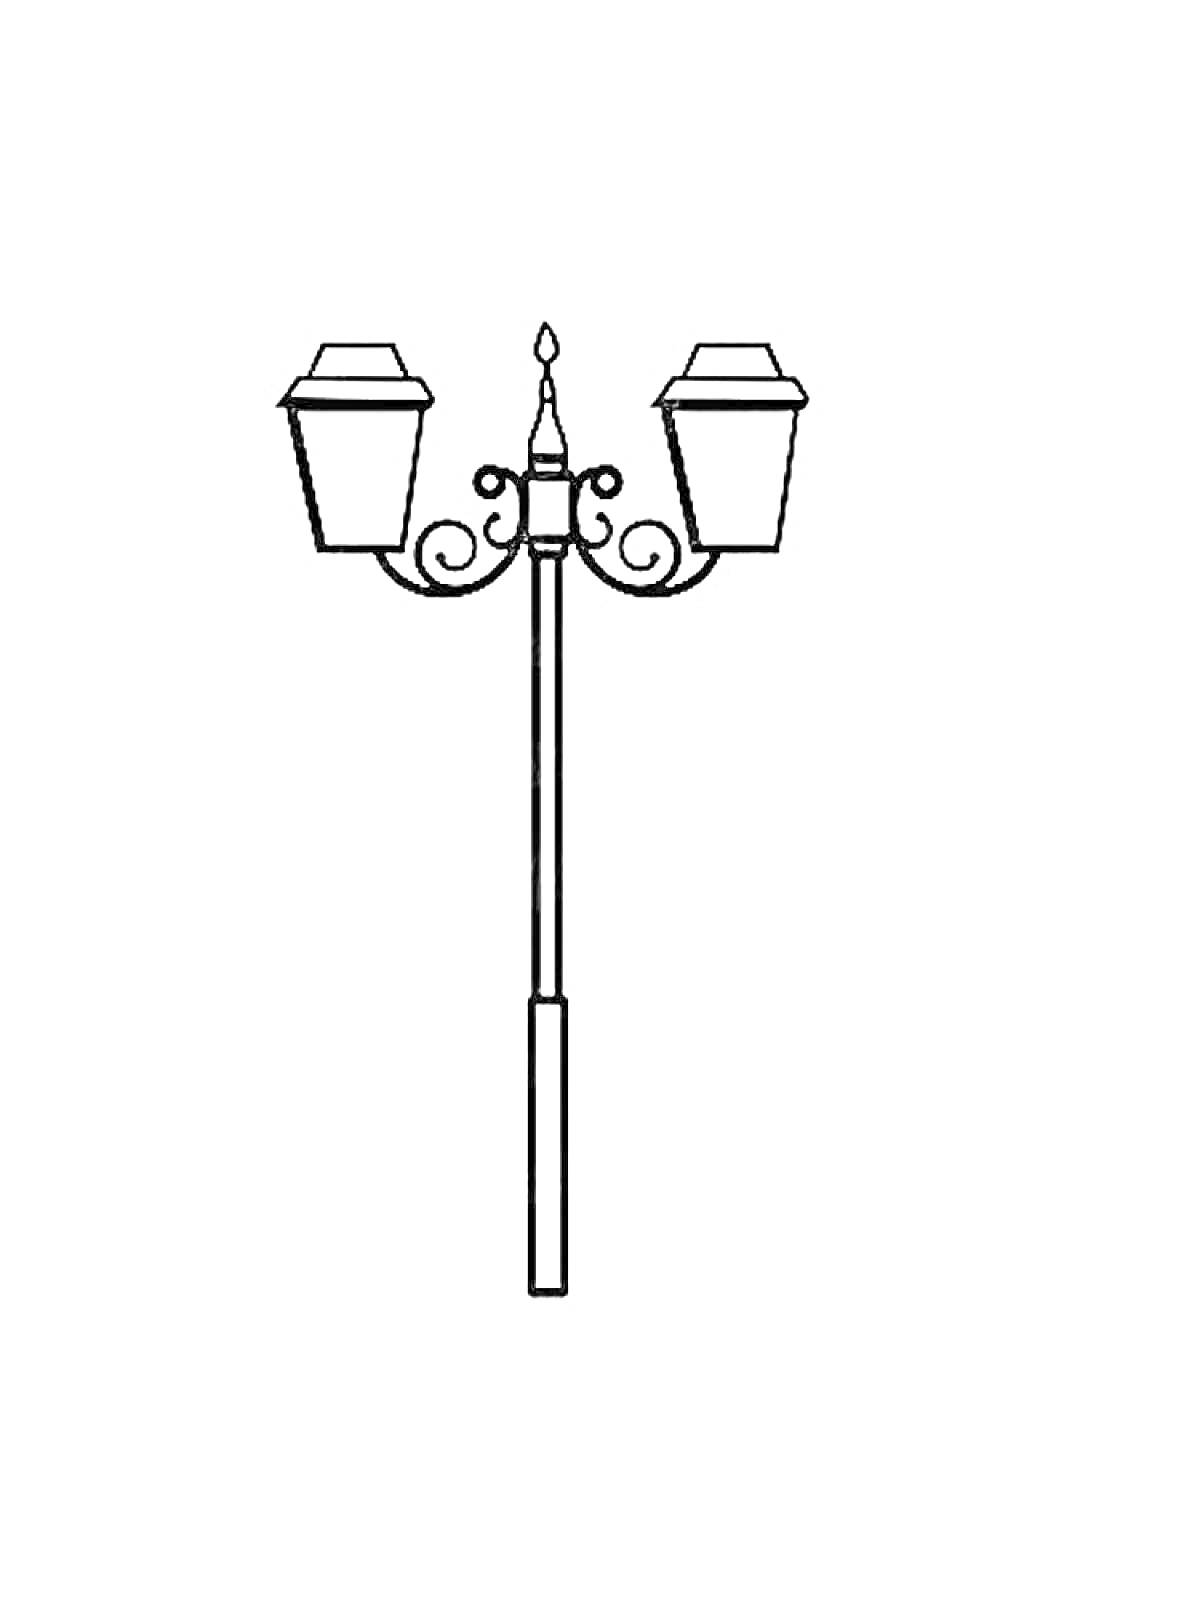 Уличный фонарь с двумя светильниками и декоративными элементами